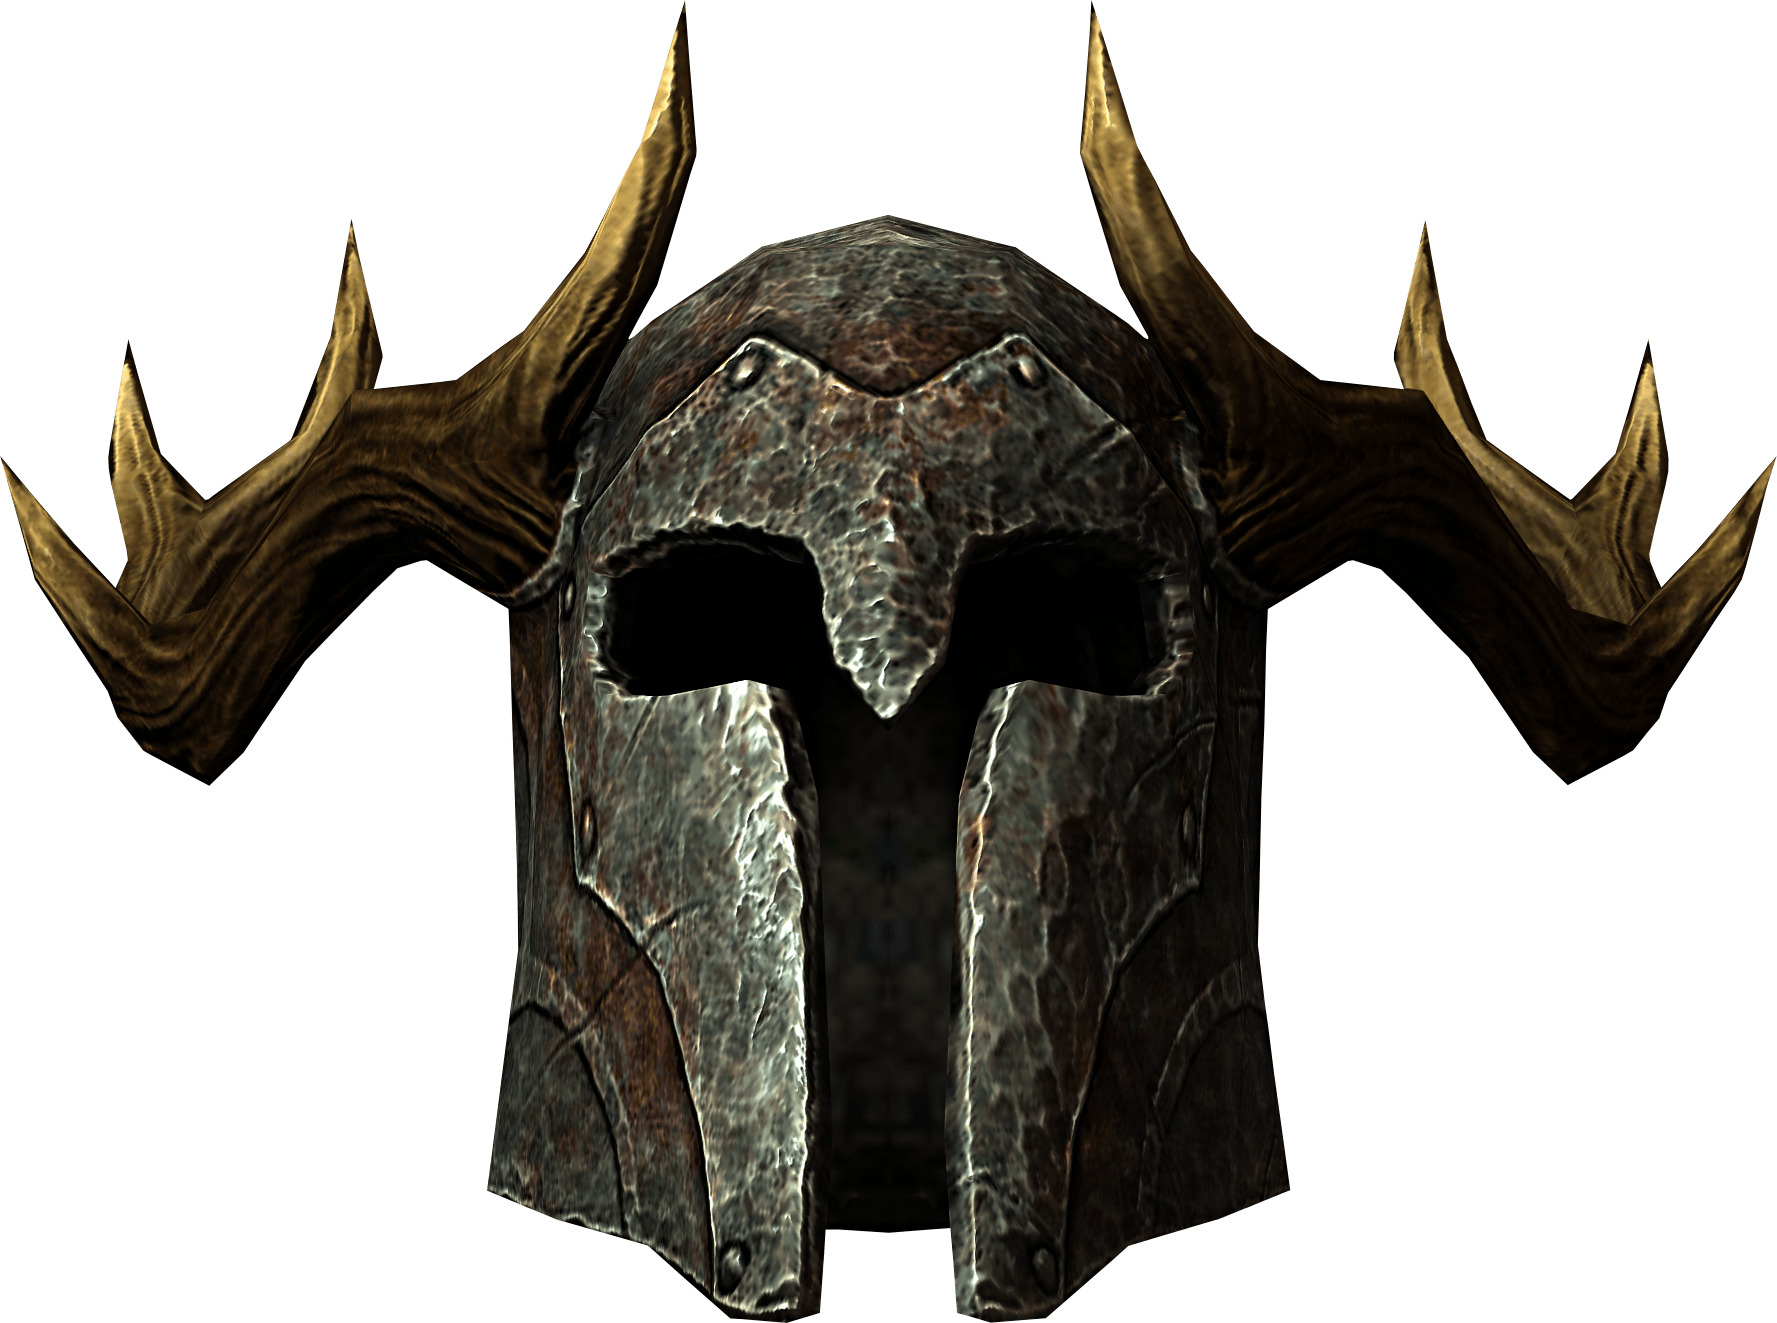 Elder Scrolls Skyrim Helmet png icons